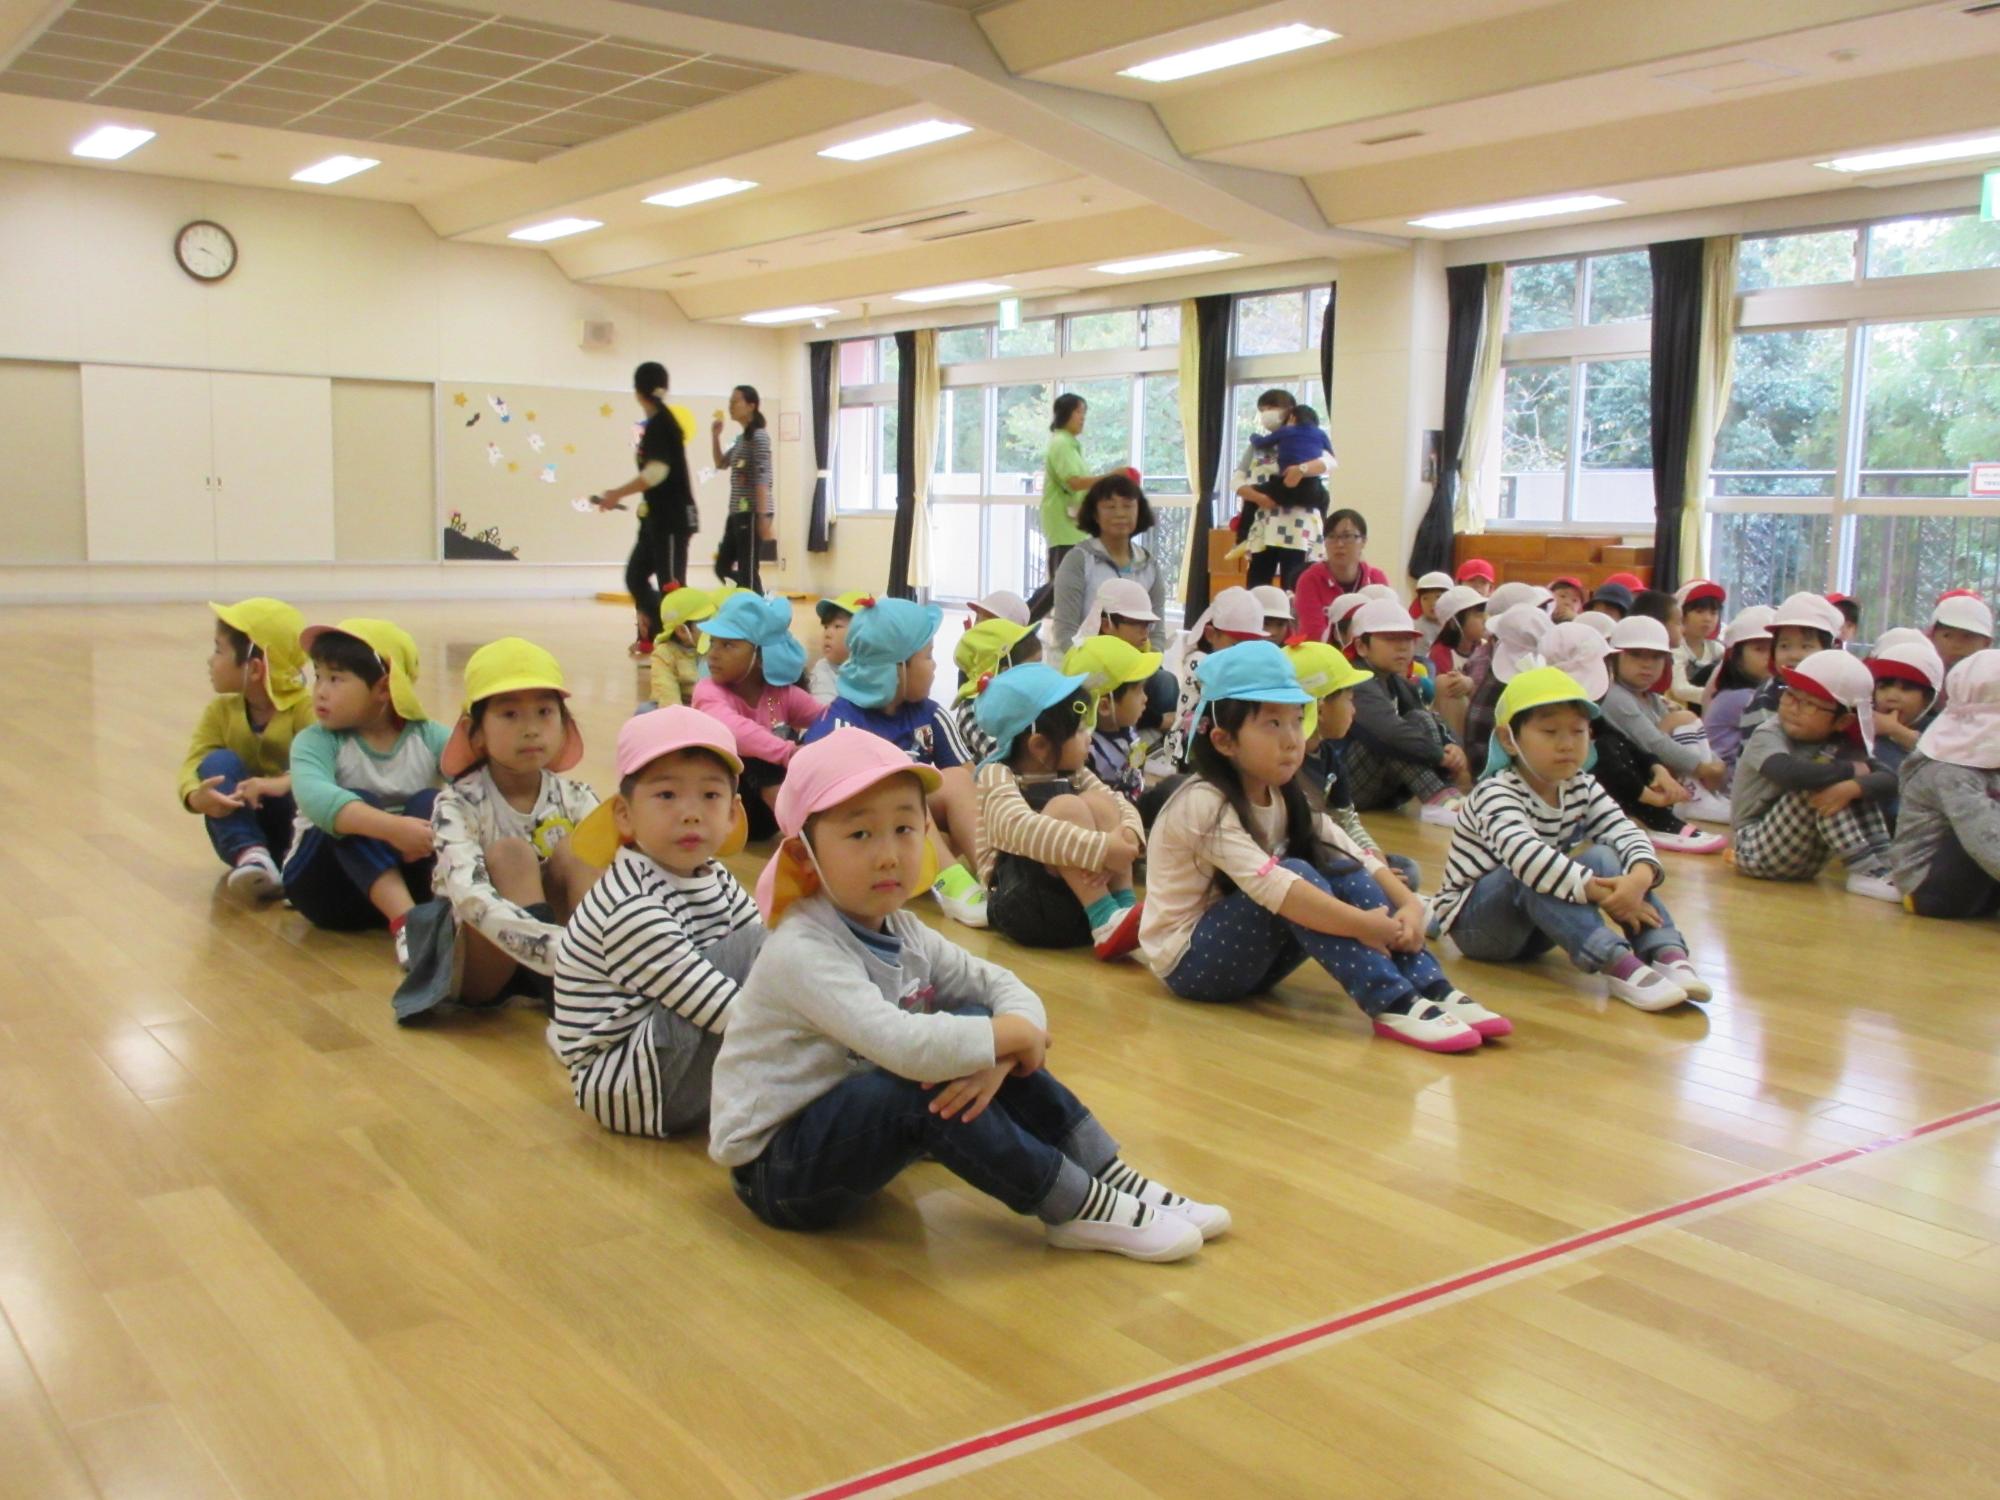 園児たちがホールの床に縦並びに体育座りをしている写真